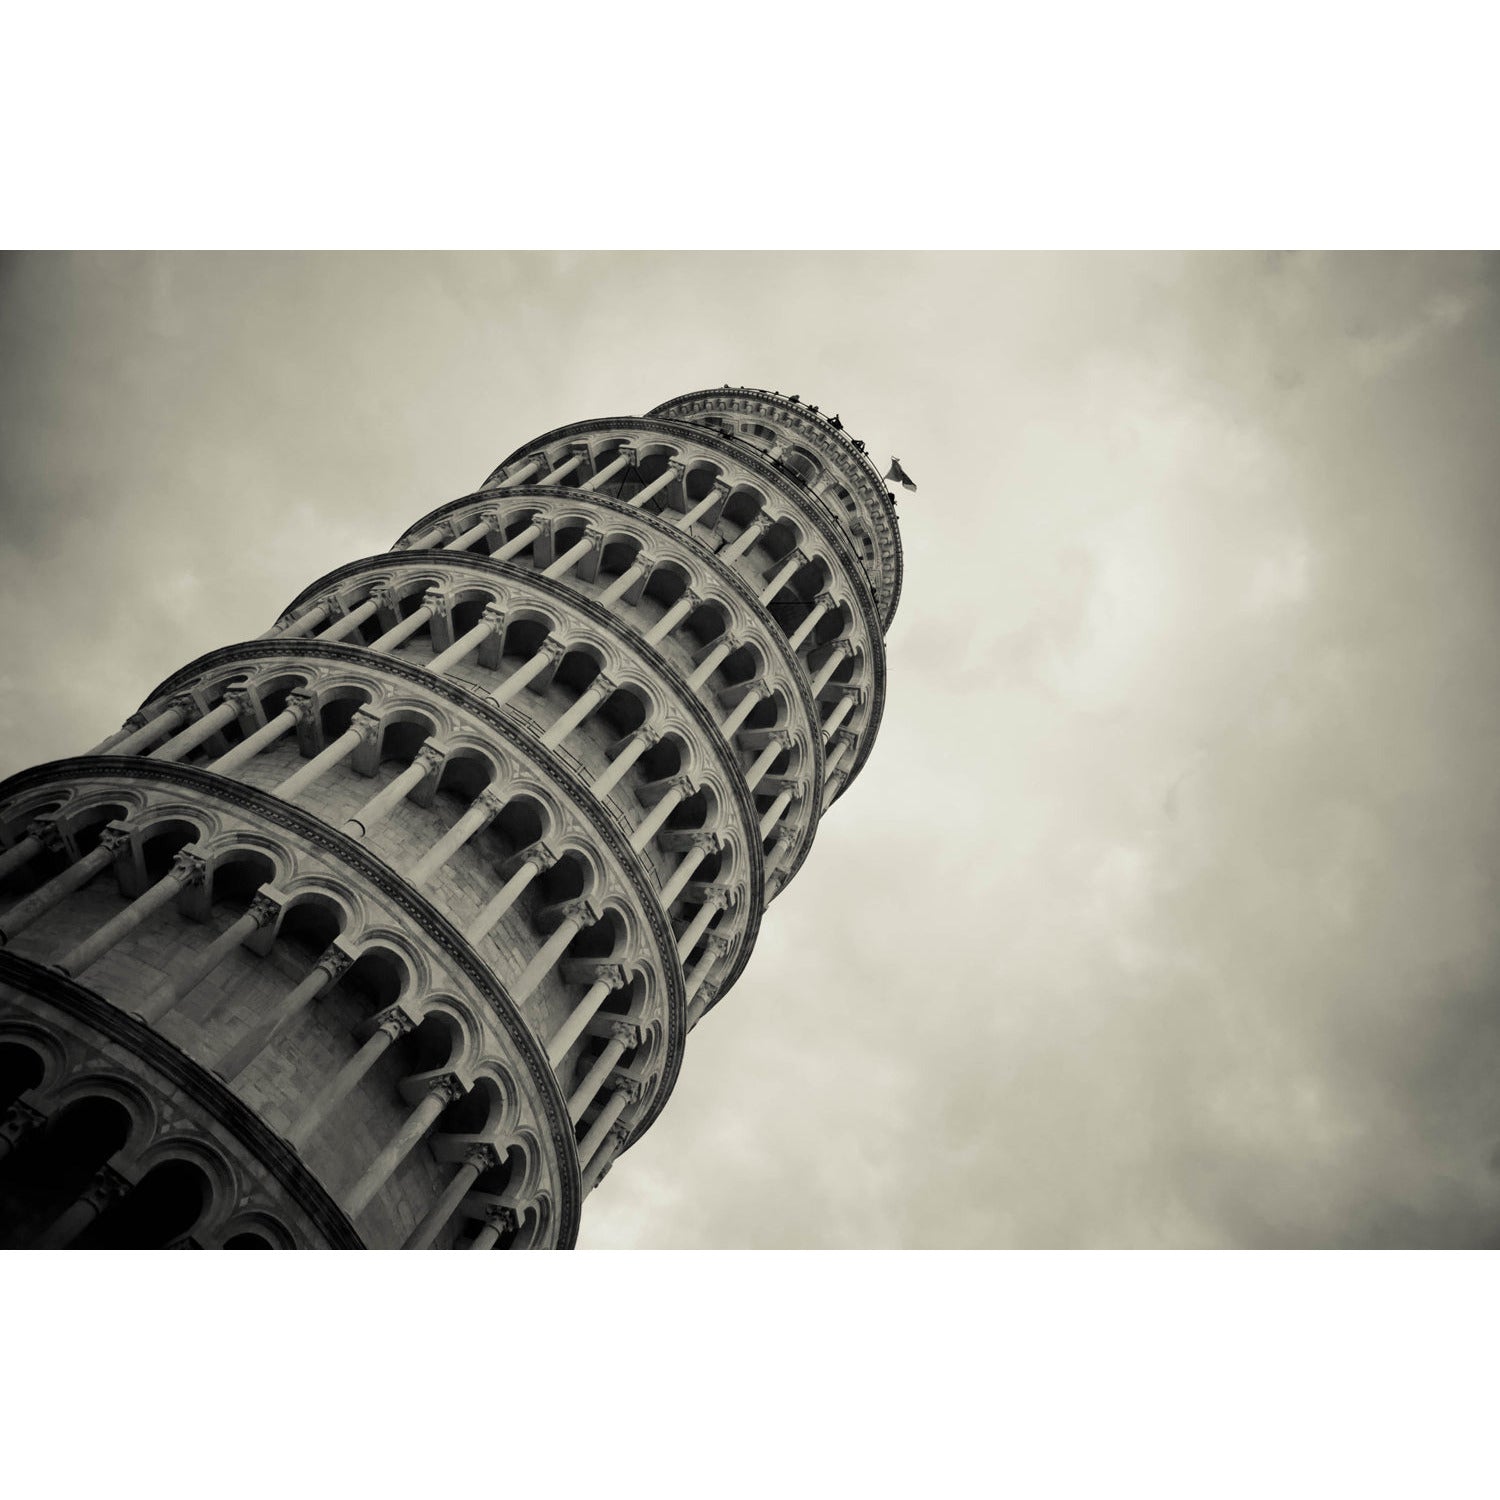 Leinwandbild - Schiefer Turm von Pisa